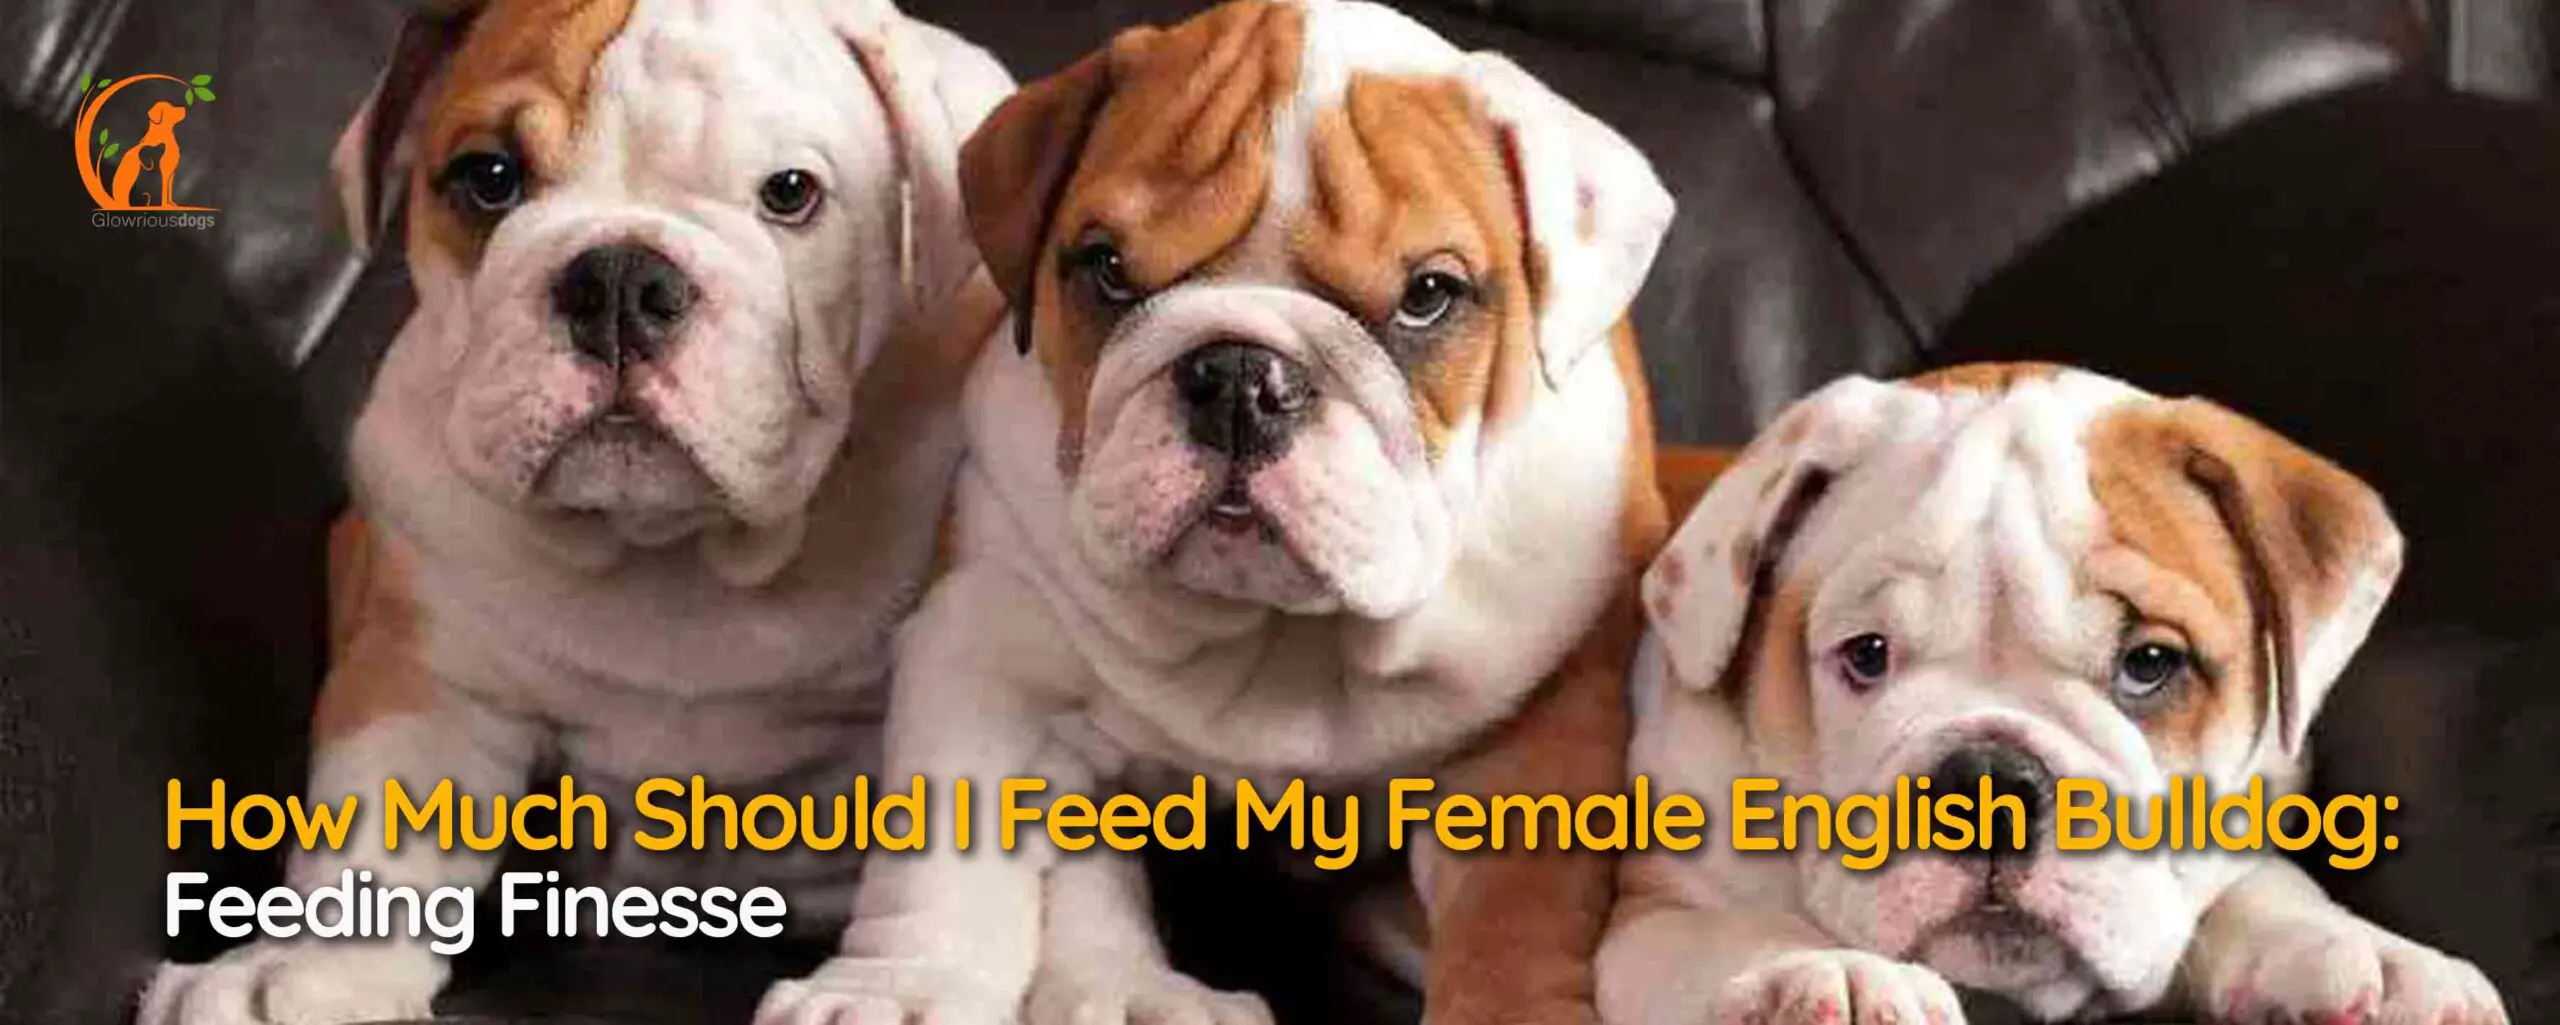 How Much Should I Feed My Female English Bulldog: Feeding Finesse